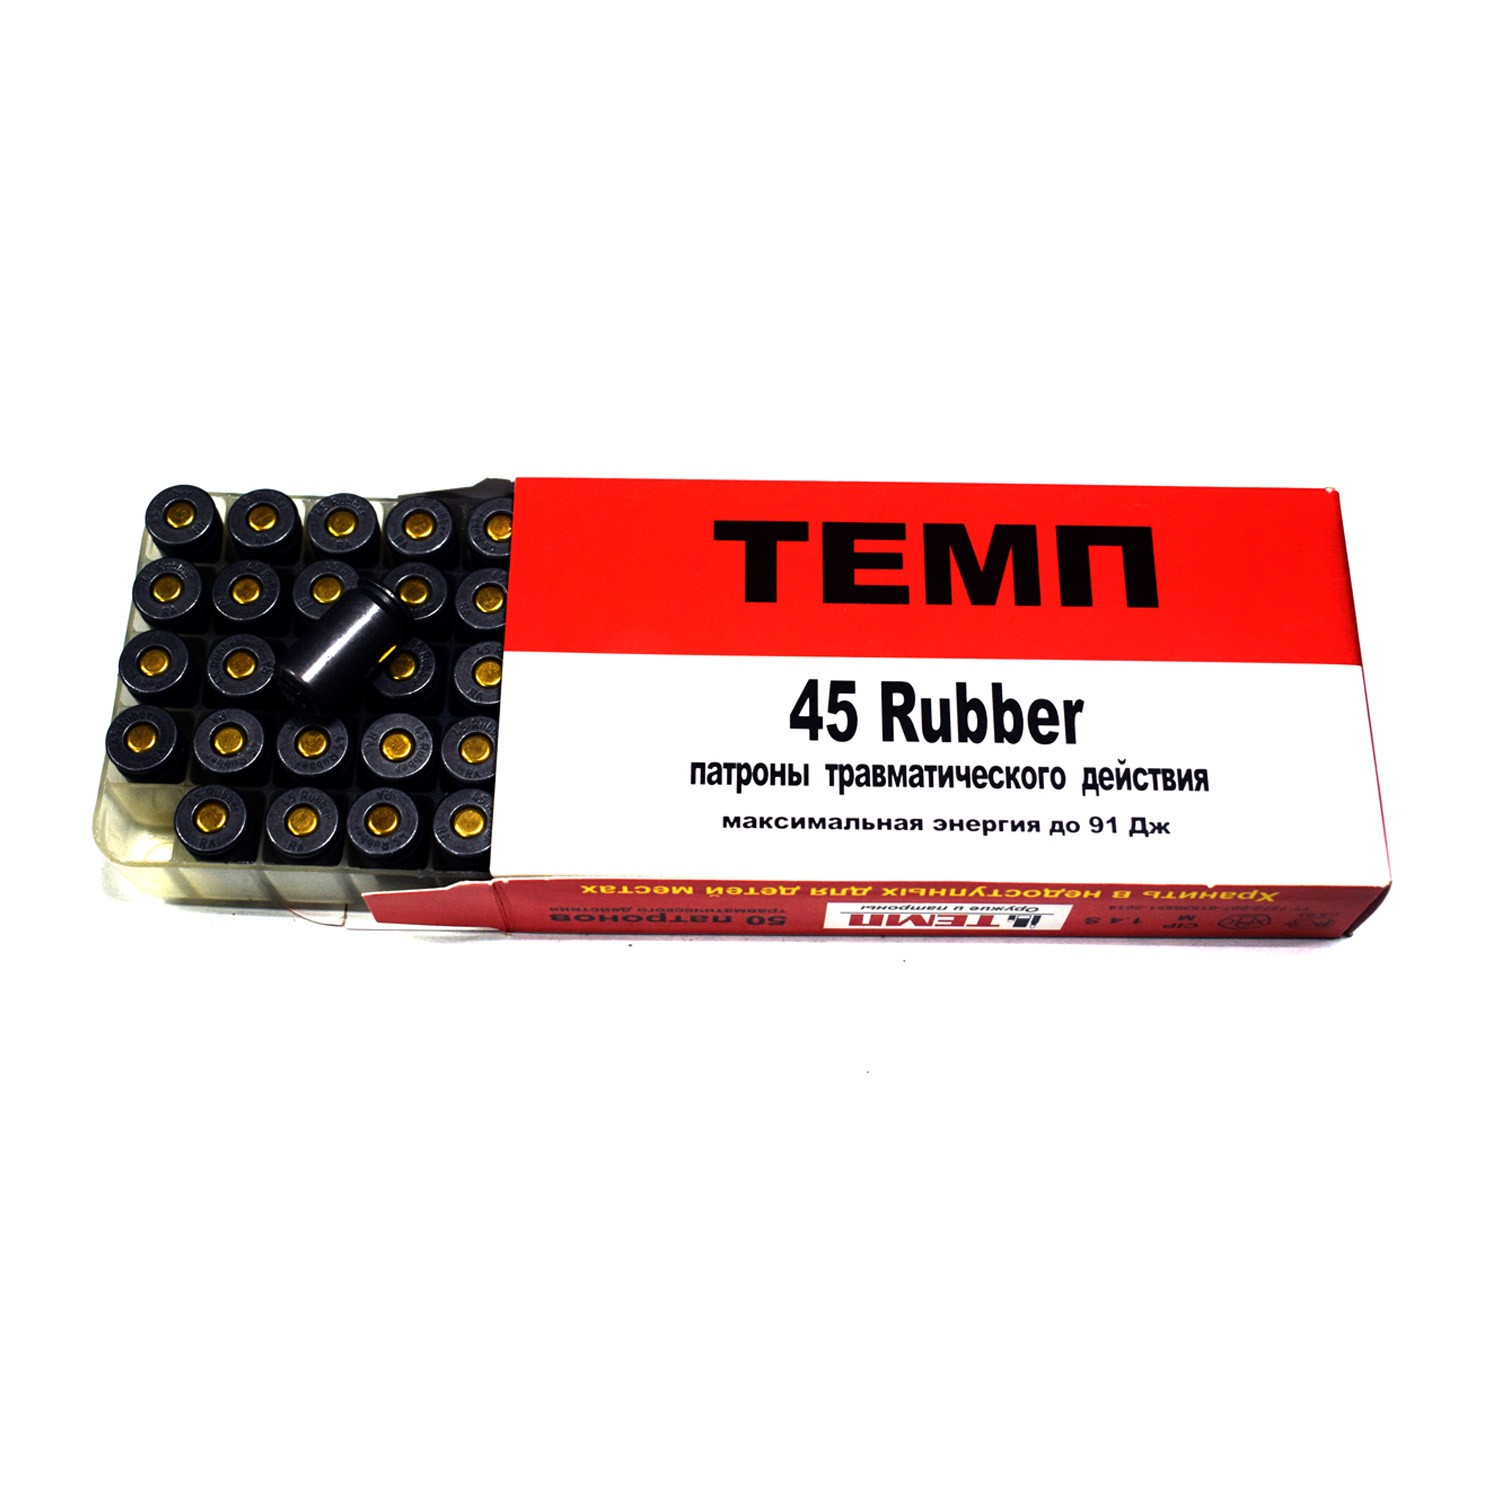 temp-45-rubber